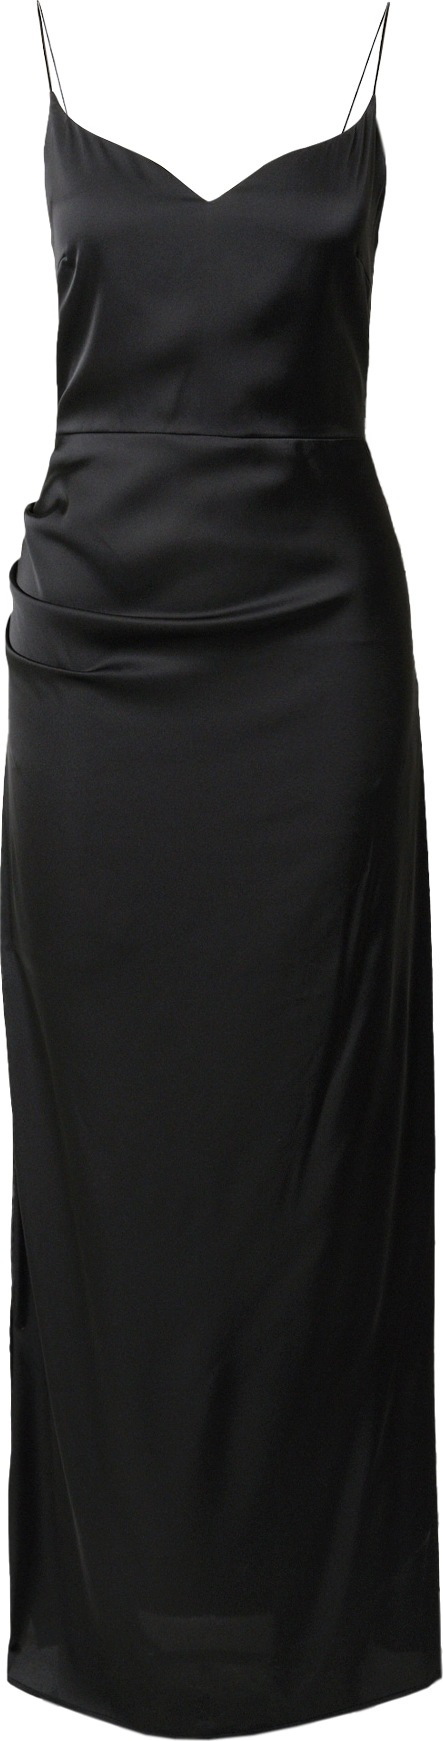 VIERVIER Společenské šaty 'Greta' černá